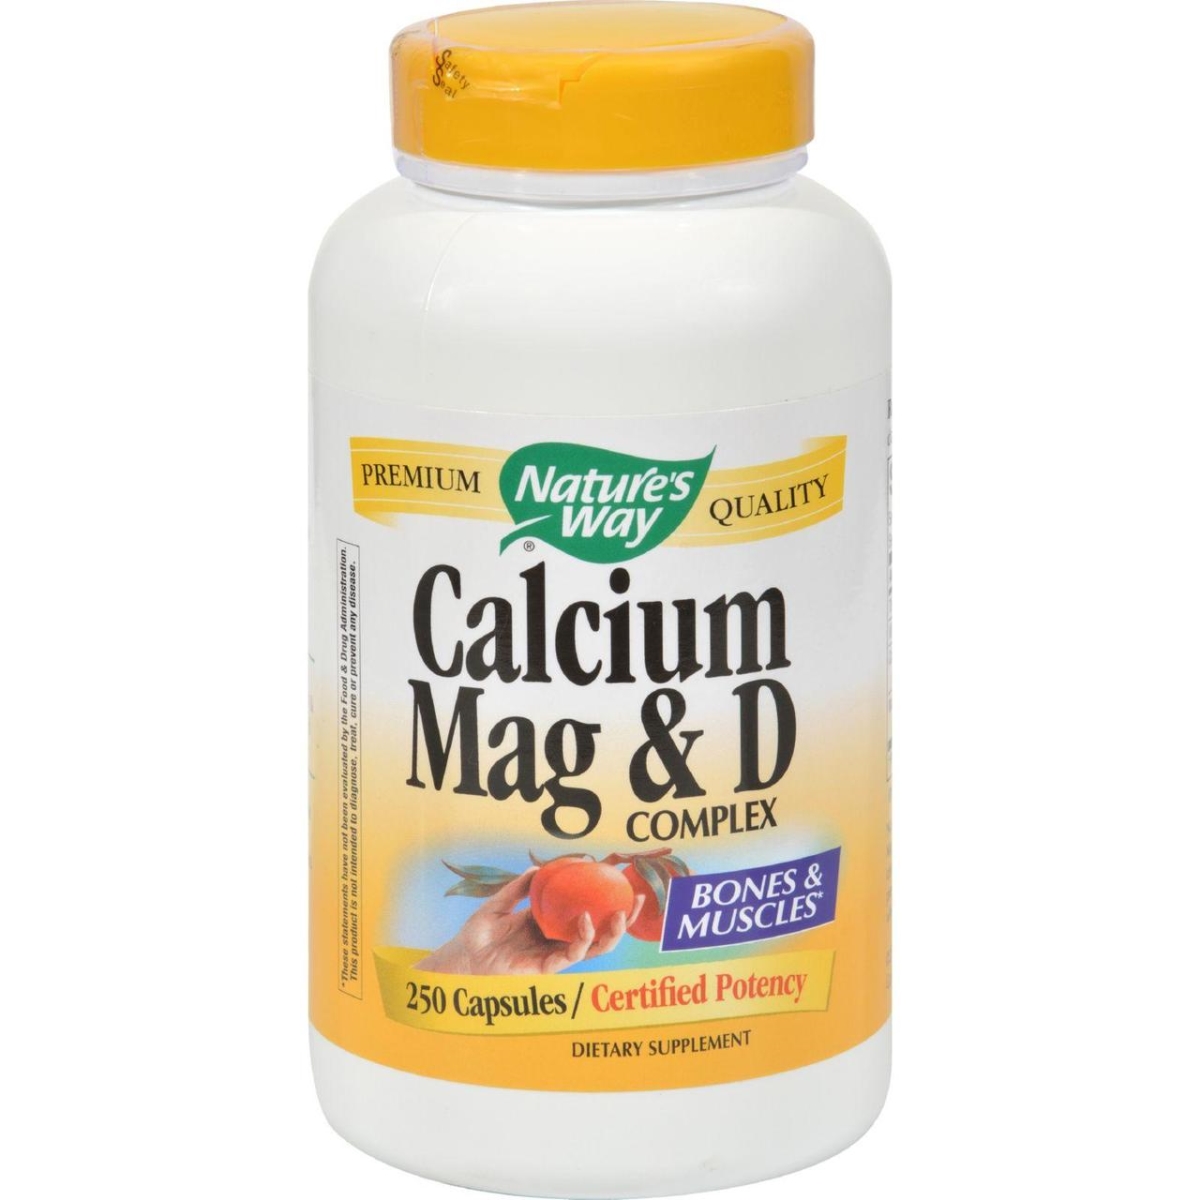 Hg0817460 Calcium Magnesium & D Complex - 250 Capsules